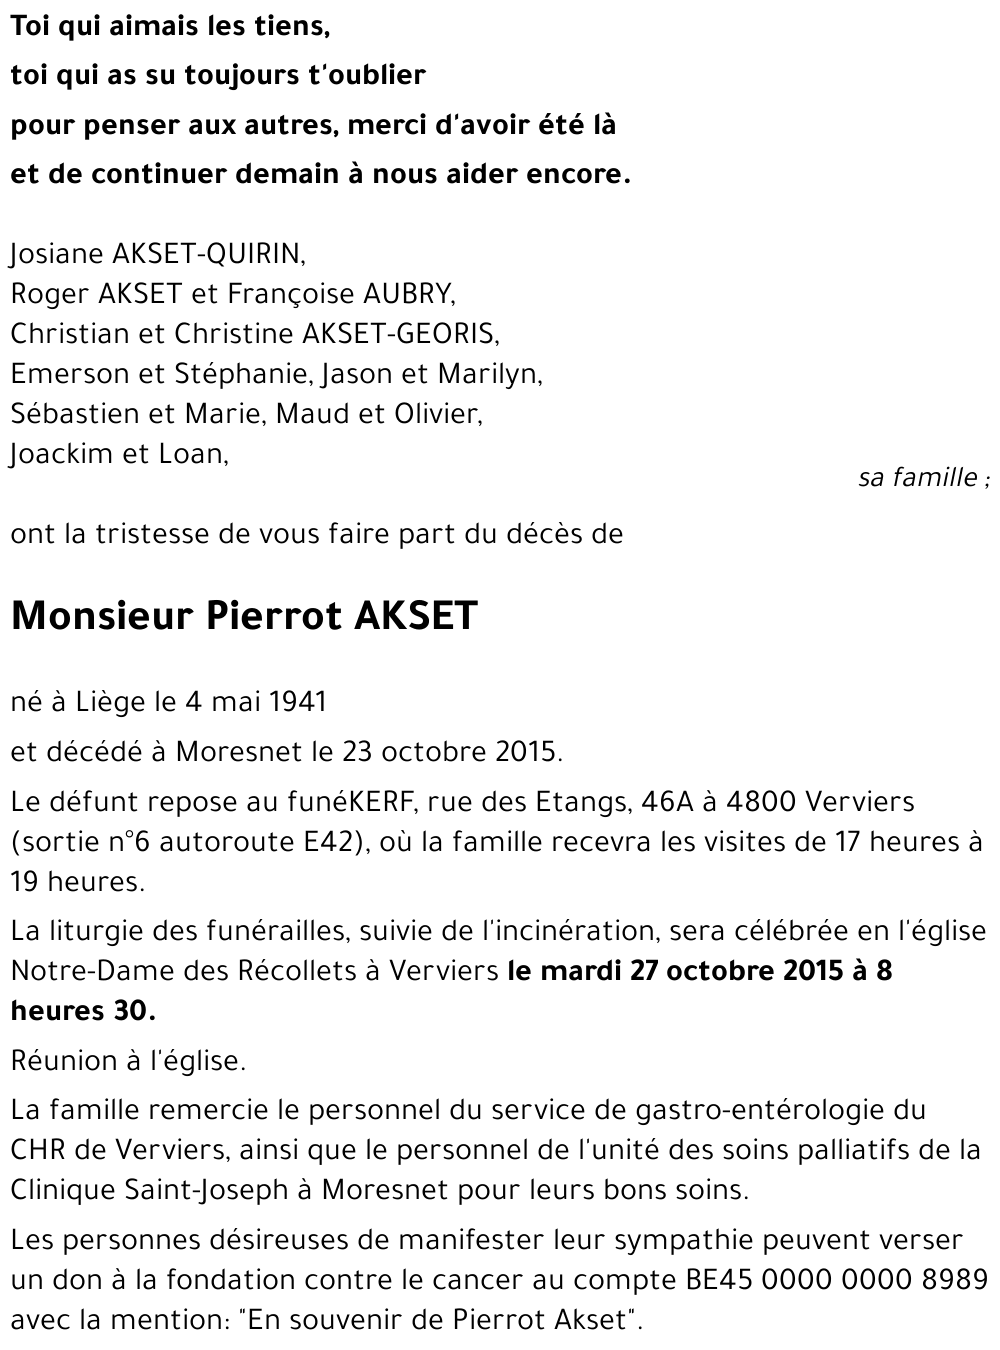 Avis de décès de Pierrot AKSET décédé le 23/10/2015 à Moresnet ...